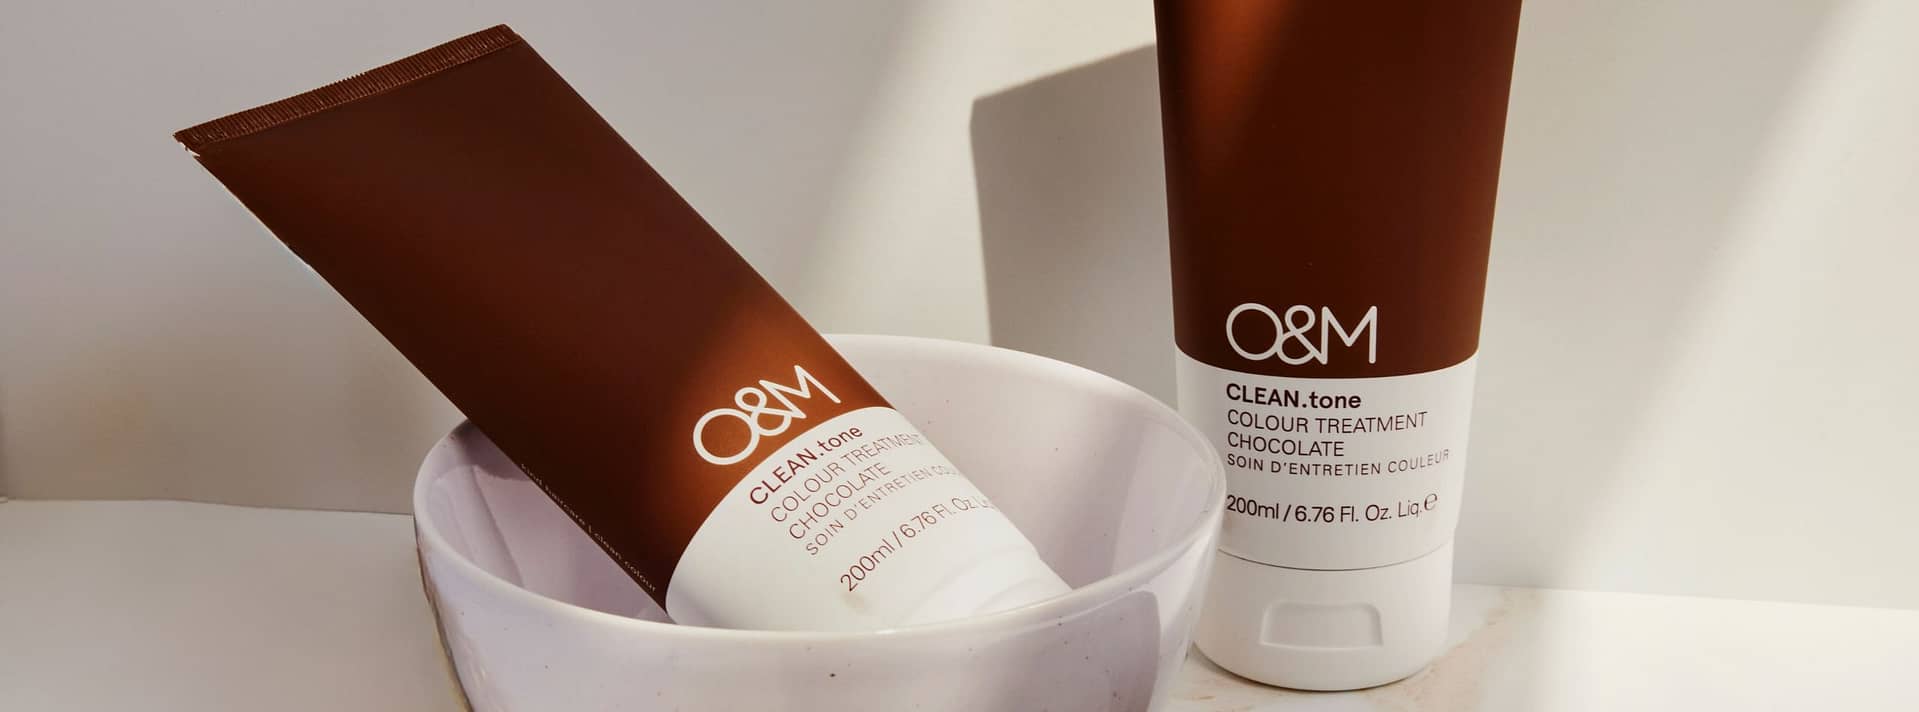 O&M Hair Colour Care- Clean.tone